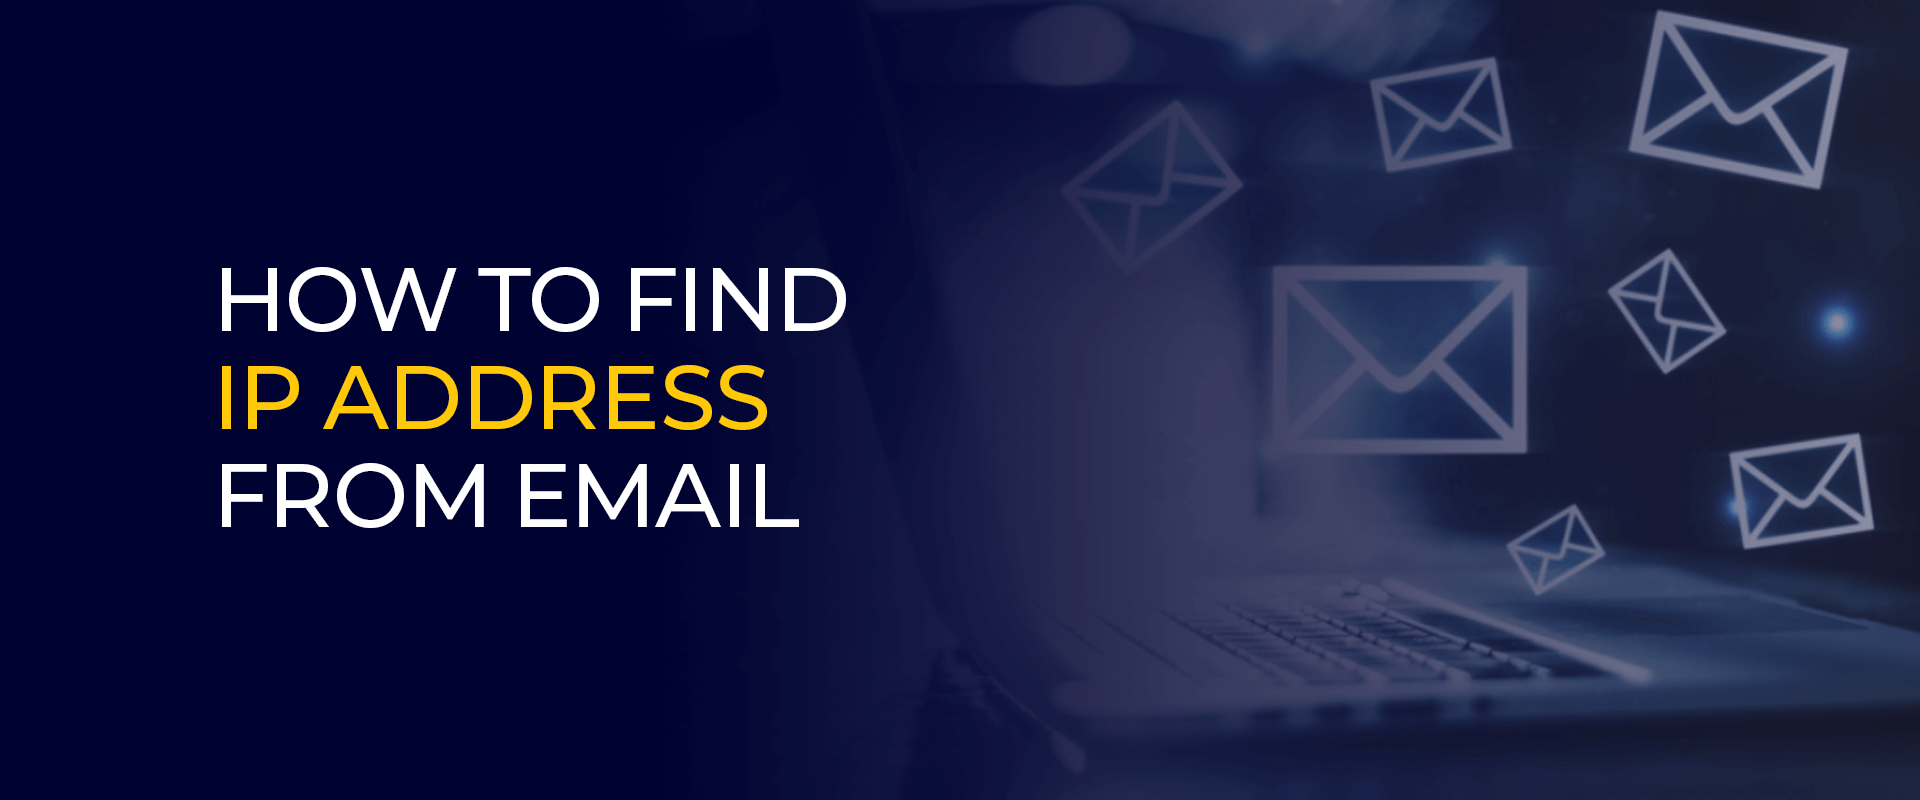 Cara menemukan alamat ip dari email